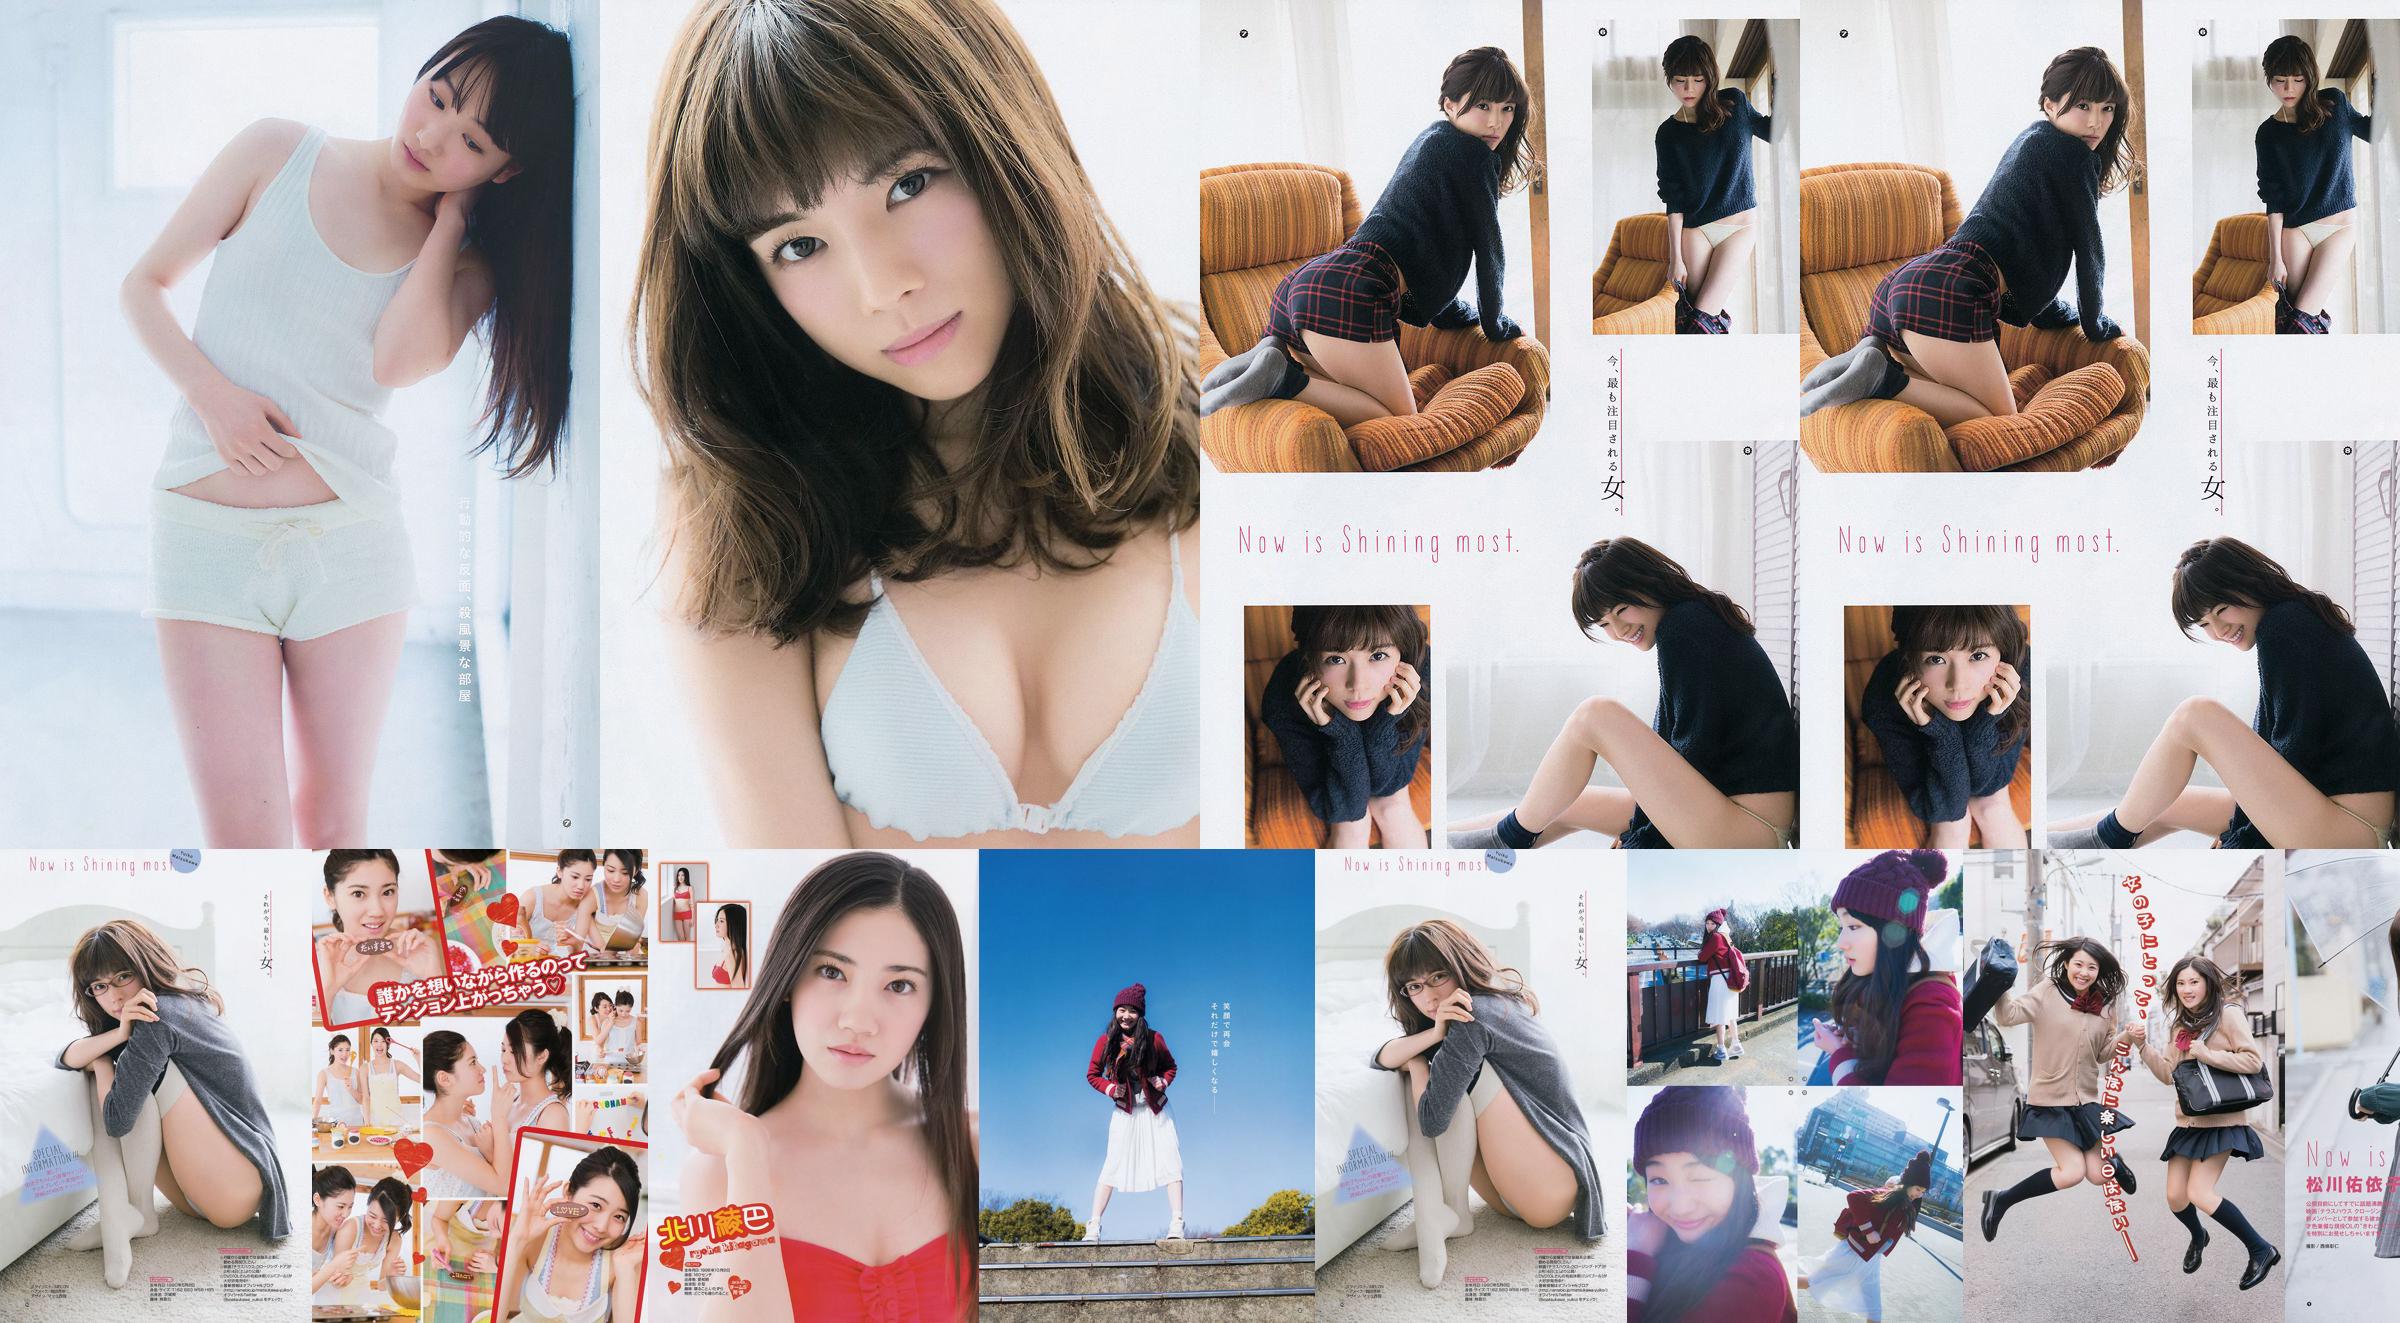 [Young Gangan] Ryoha Kitagawa Ami Miyamae Yuiko Matsukawa Narumi Akizuki 2015 nr. 04 foto No.986b6a Pagina 12